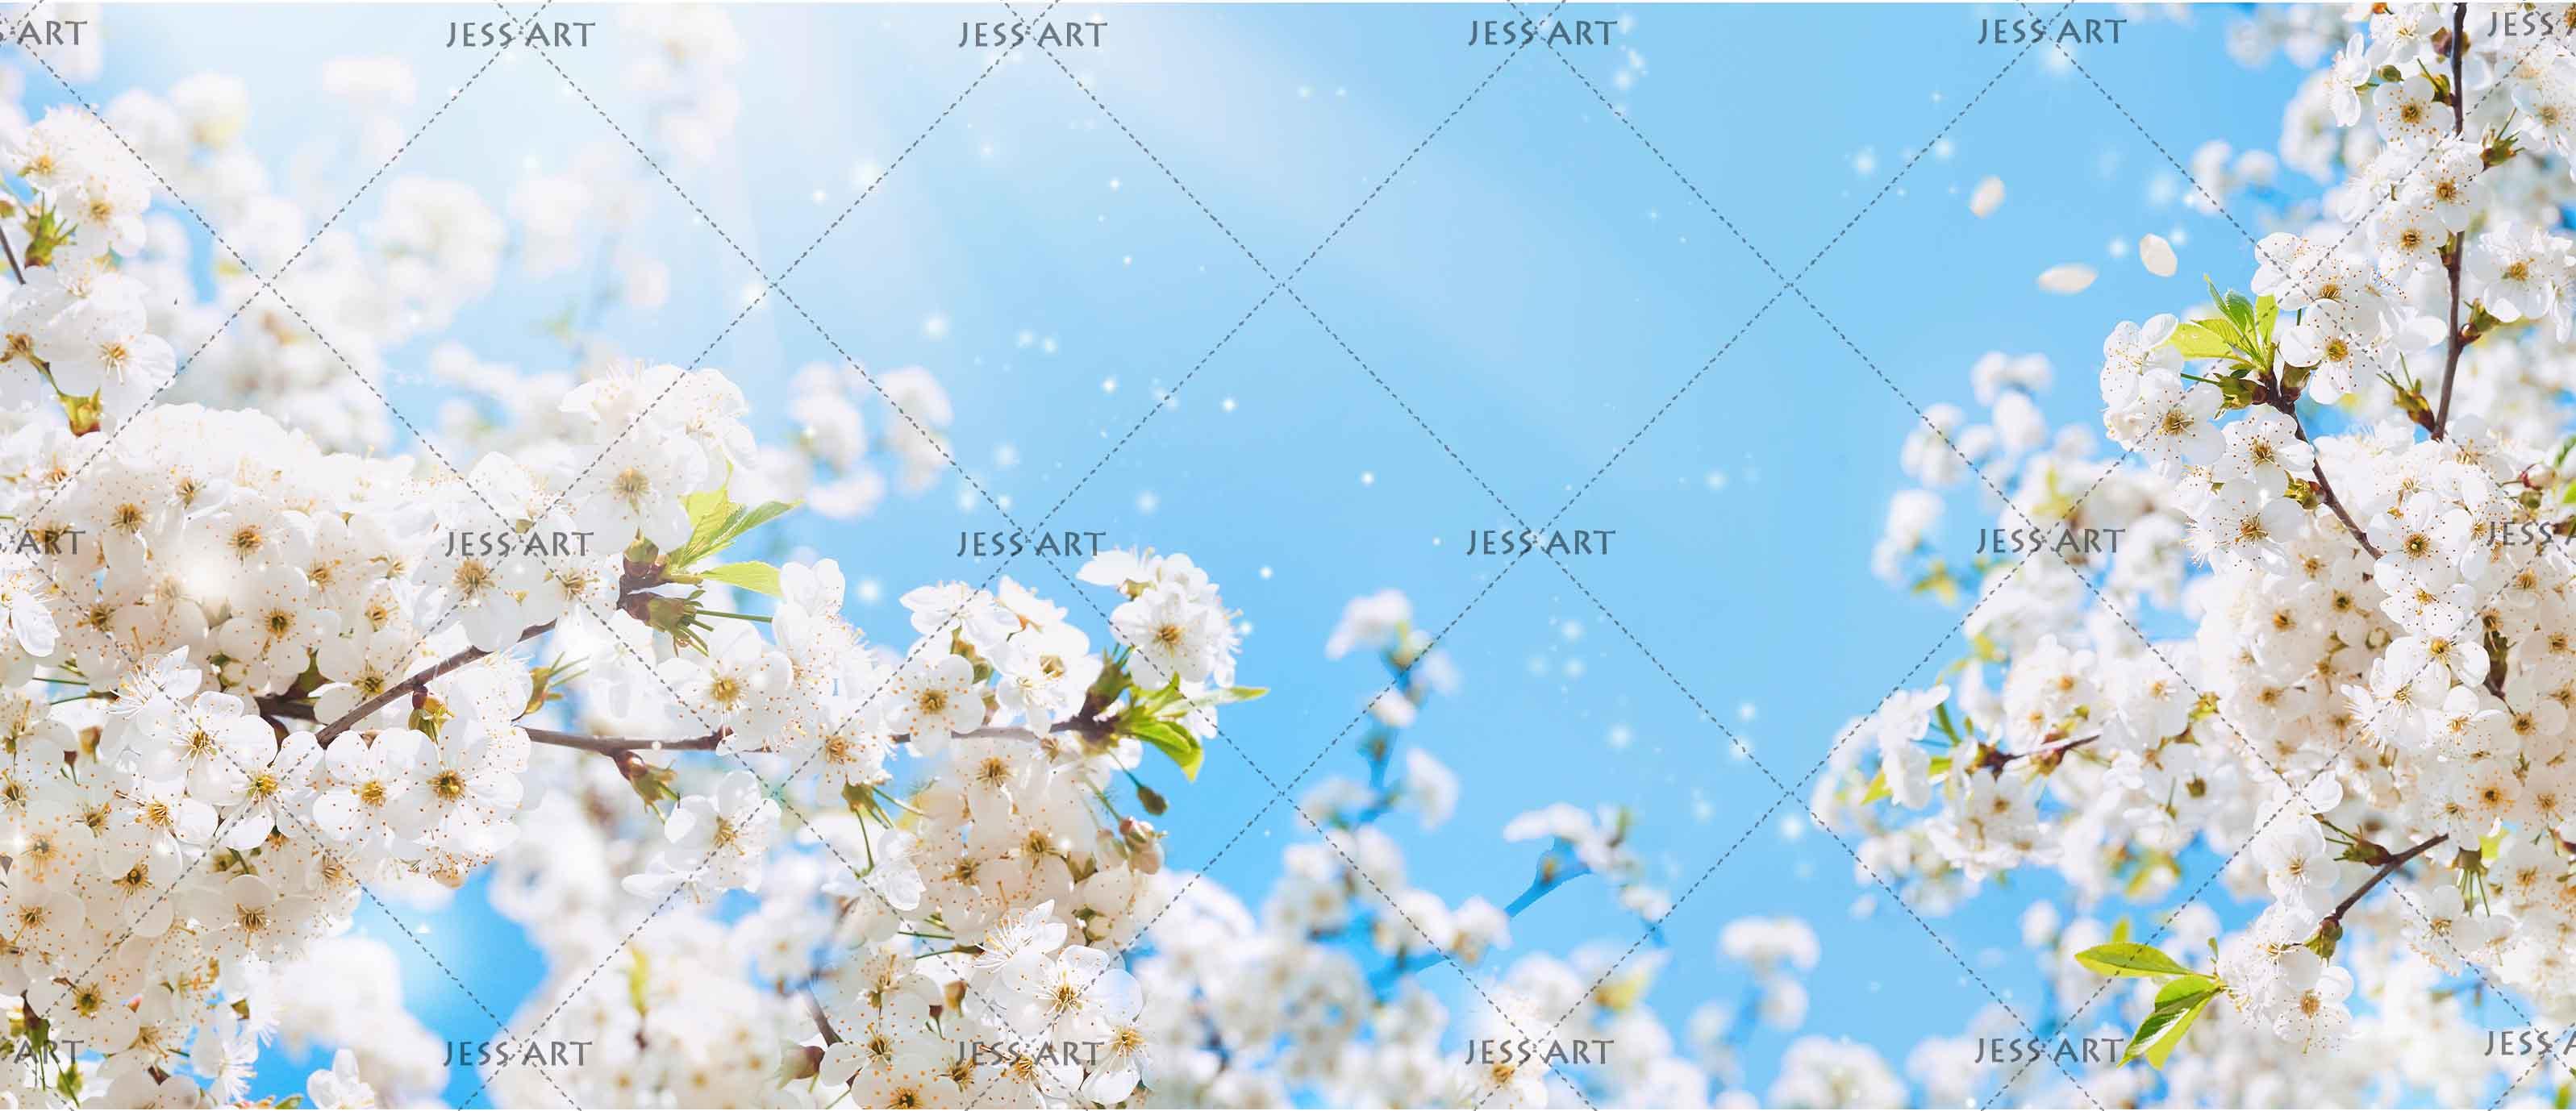 3D Blue Sky Cherry Blossoms Wall Mural Wallpaper 178- Jess Art Decoration